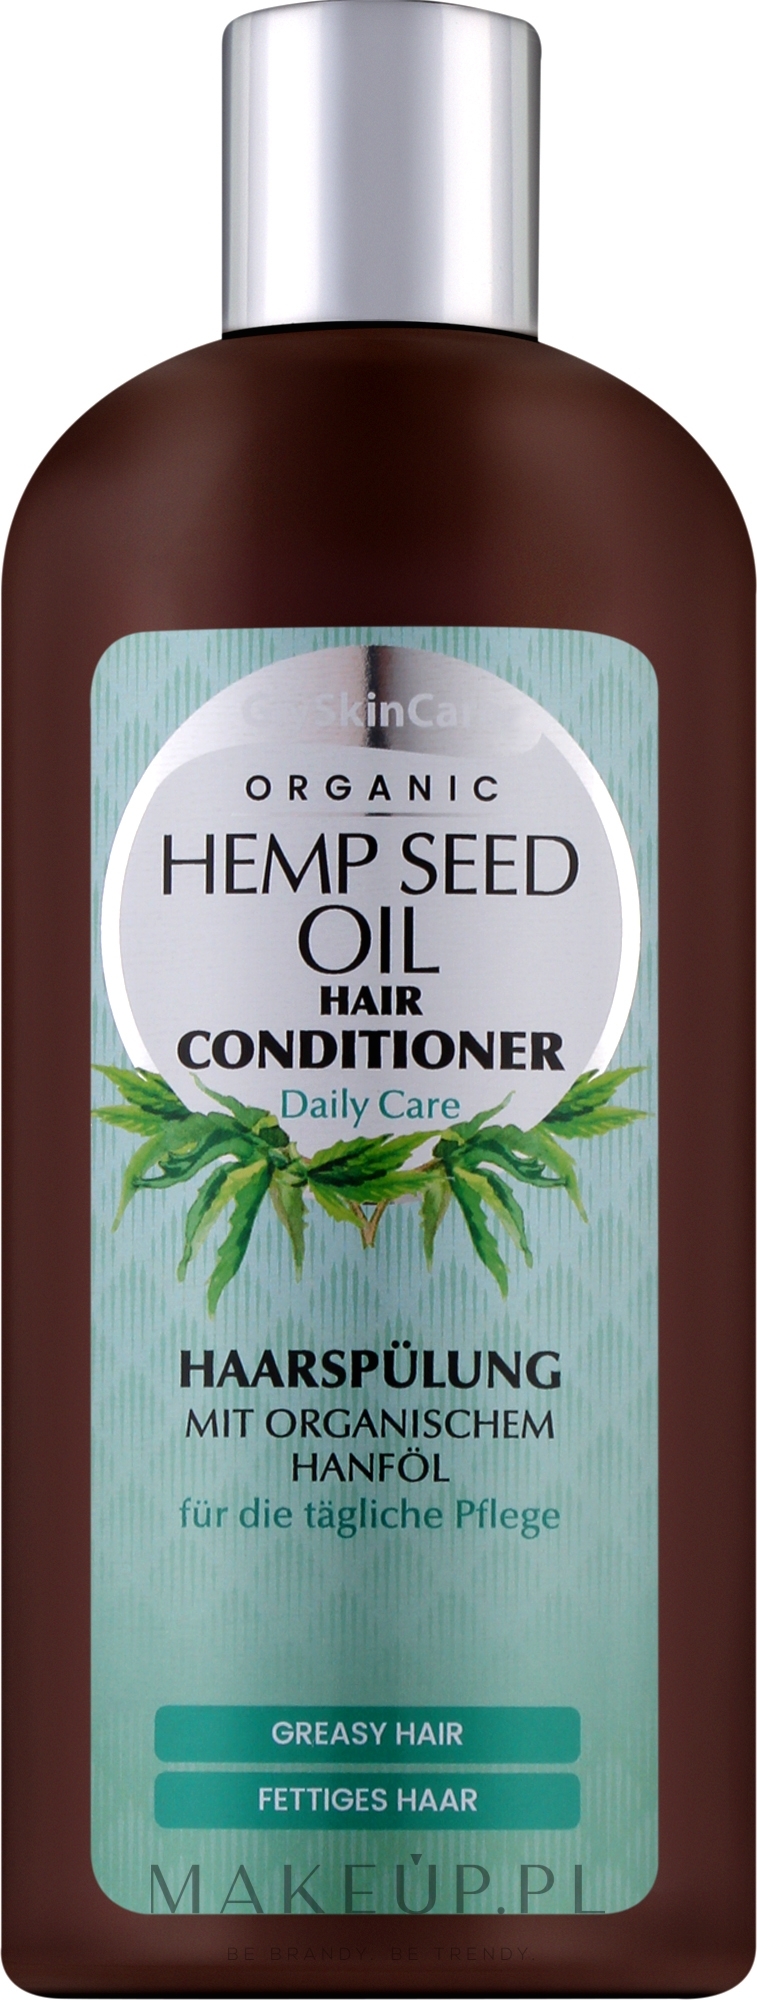 glyskincare seaberry oil szampon do włosów z organicznym olejem rokitnikowym